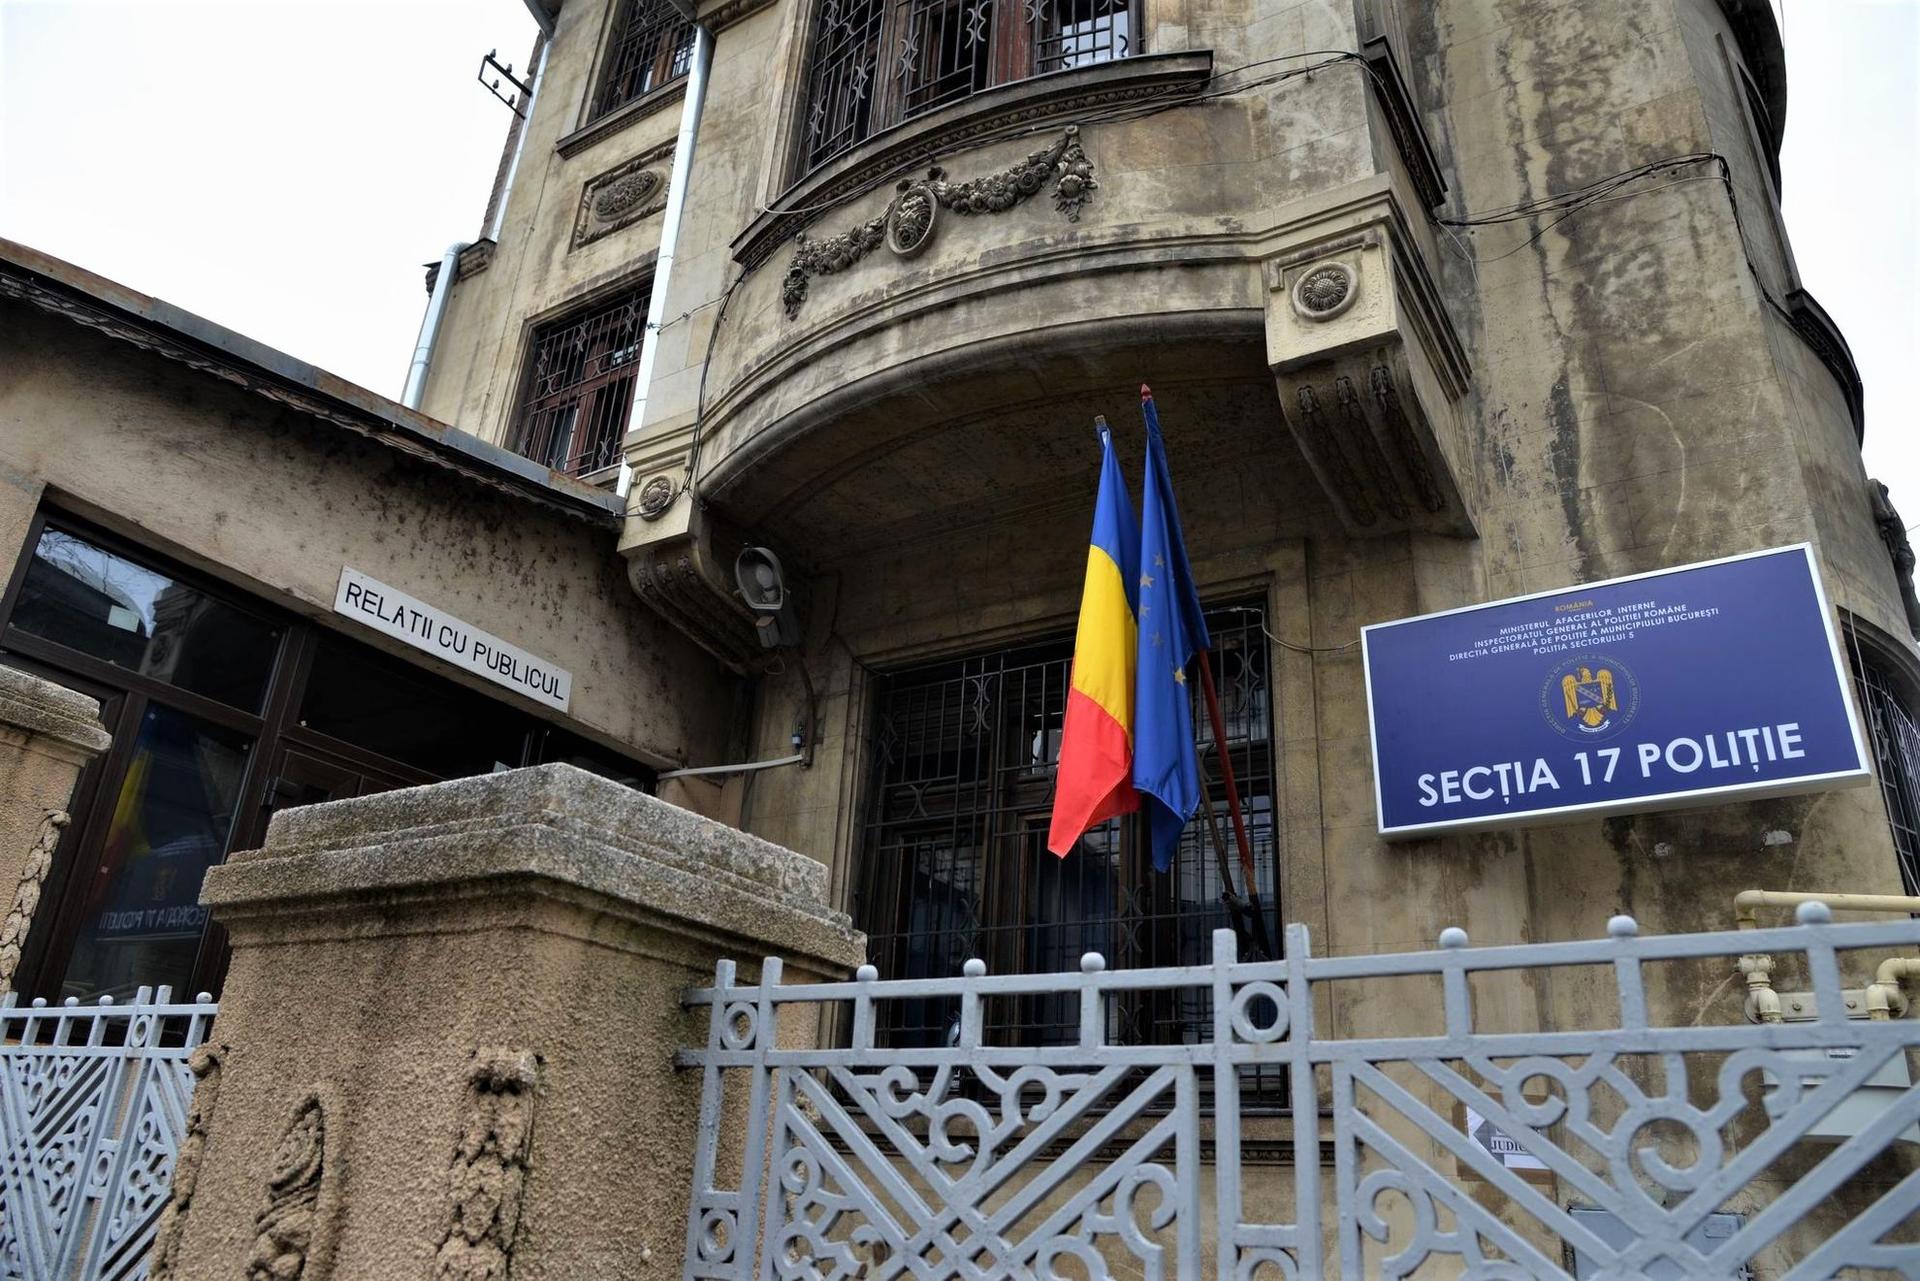  Secția 17 Poliție are sediul într-o clădire cu risc seismic clasa I, aflată în Sectorul 5, București. Foto Lucian Muntean